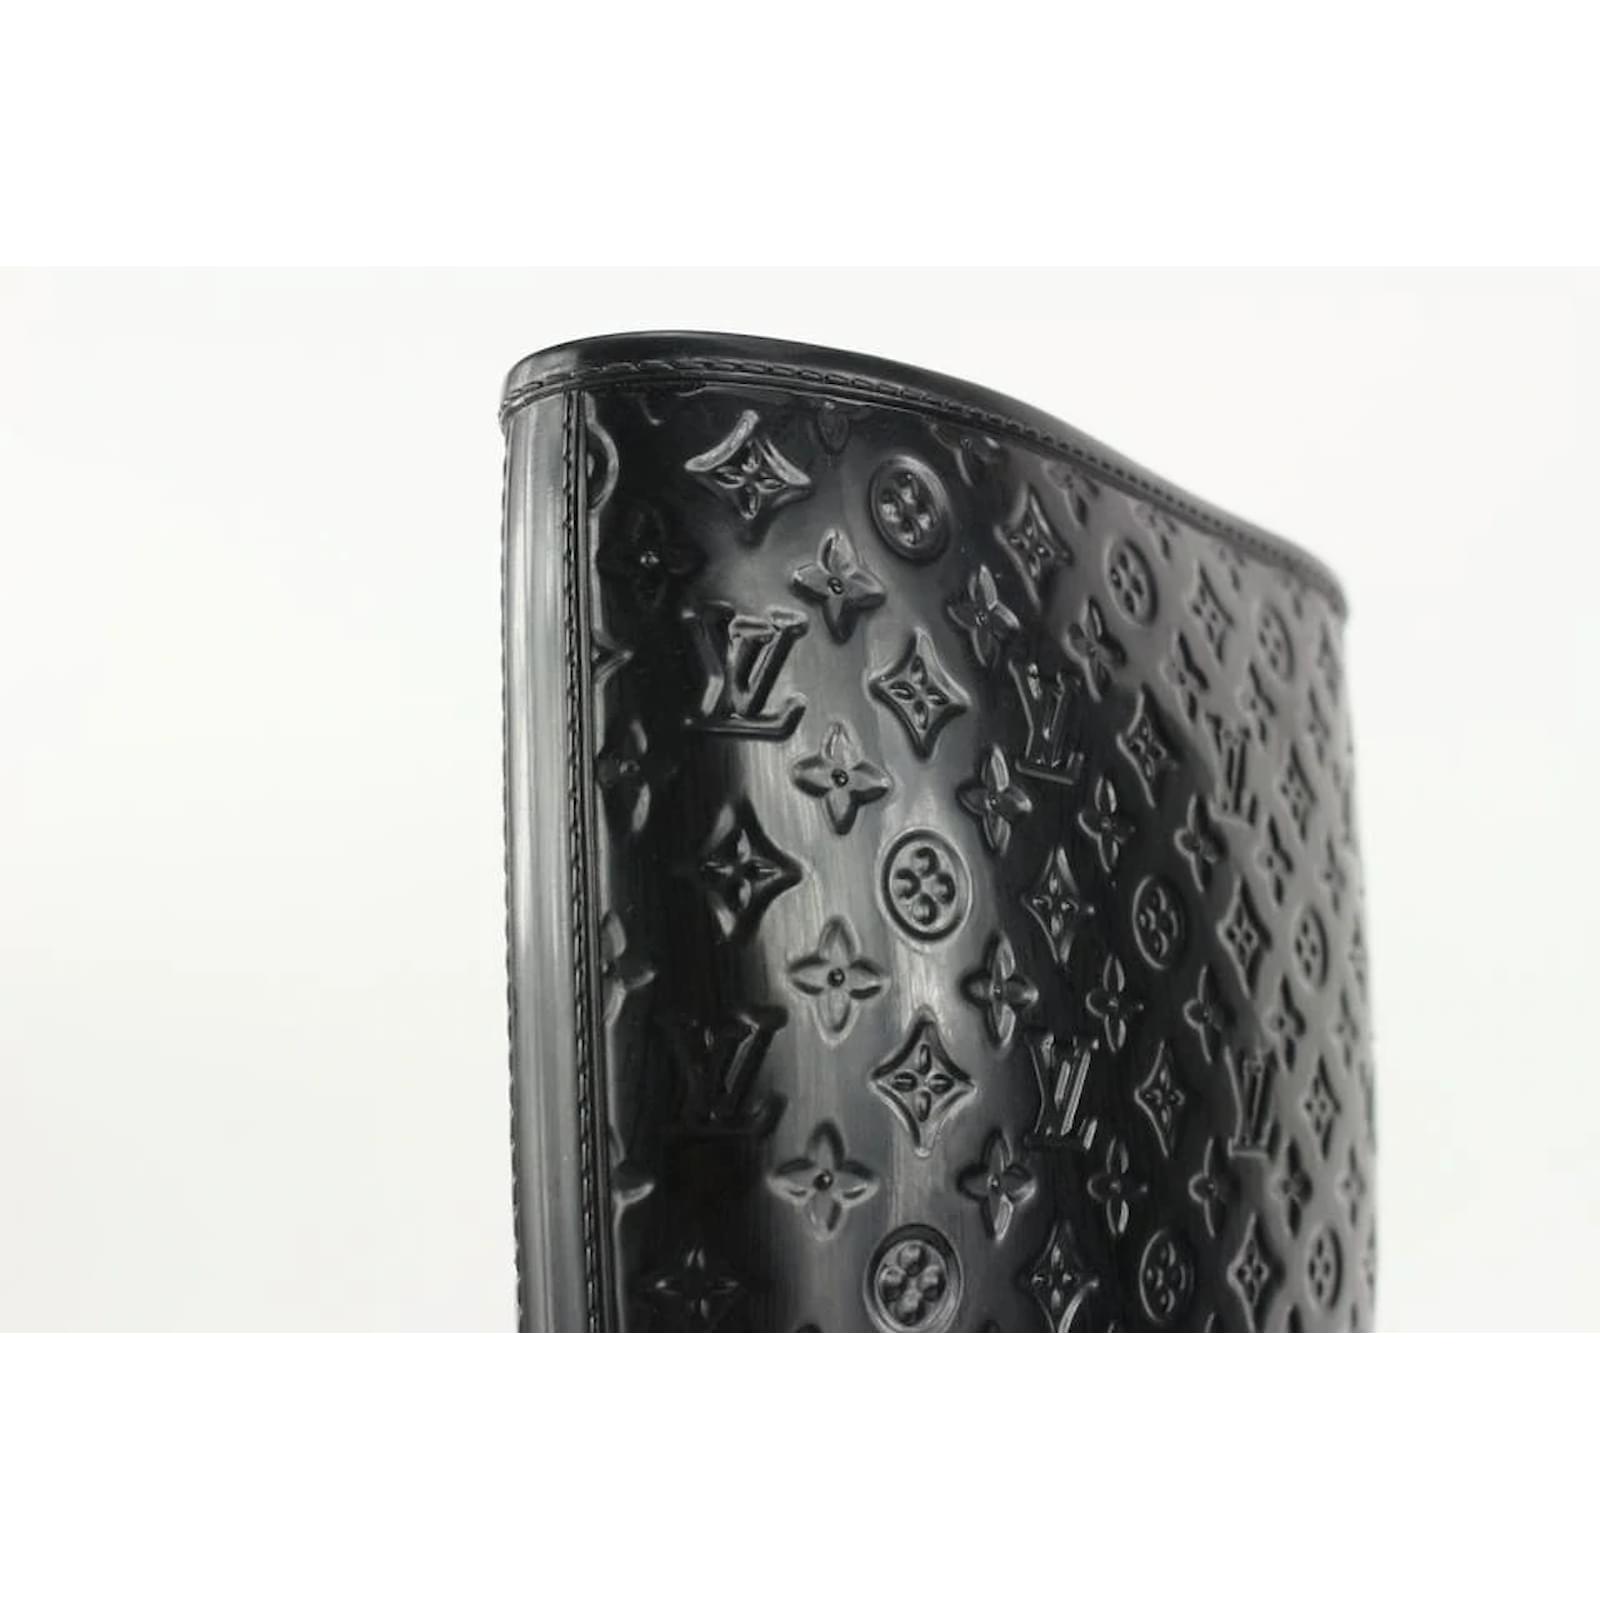 Boots Louis Vuitton Black size 39 EU in Rubber - 36526701